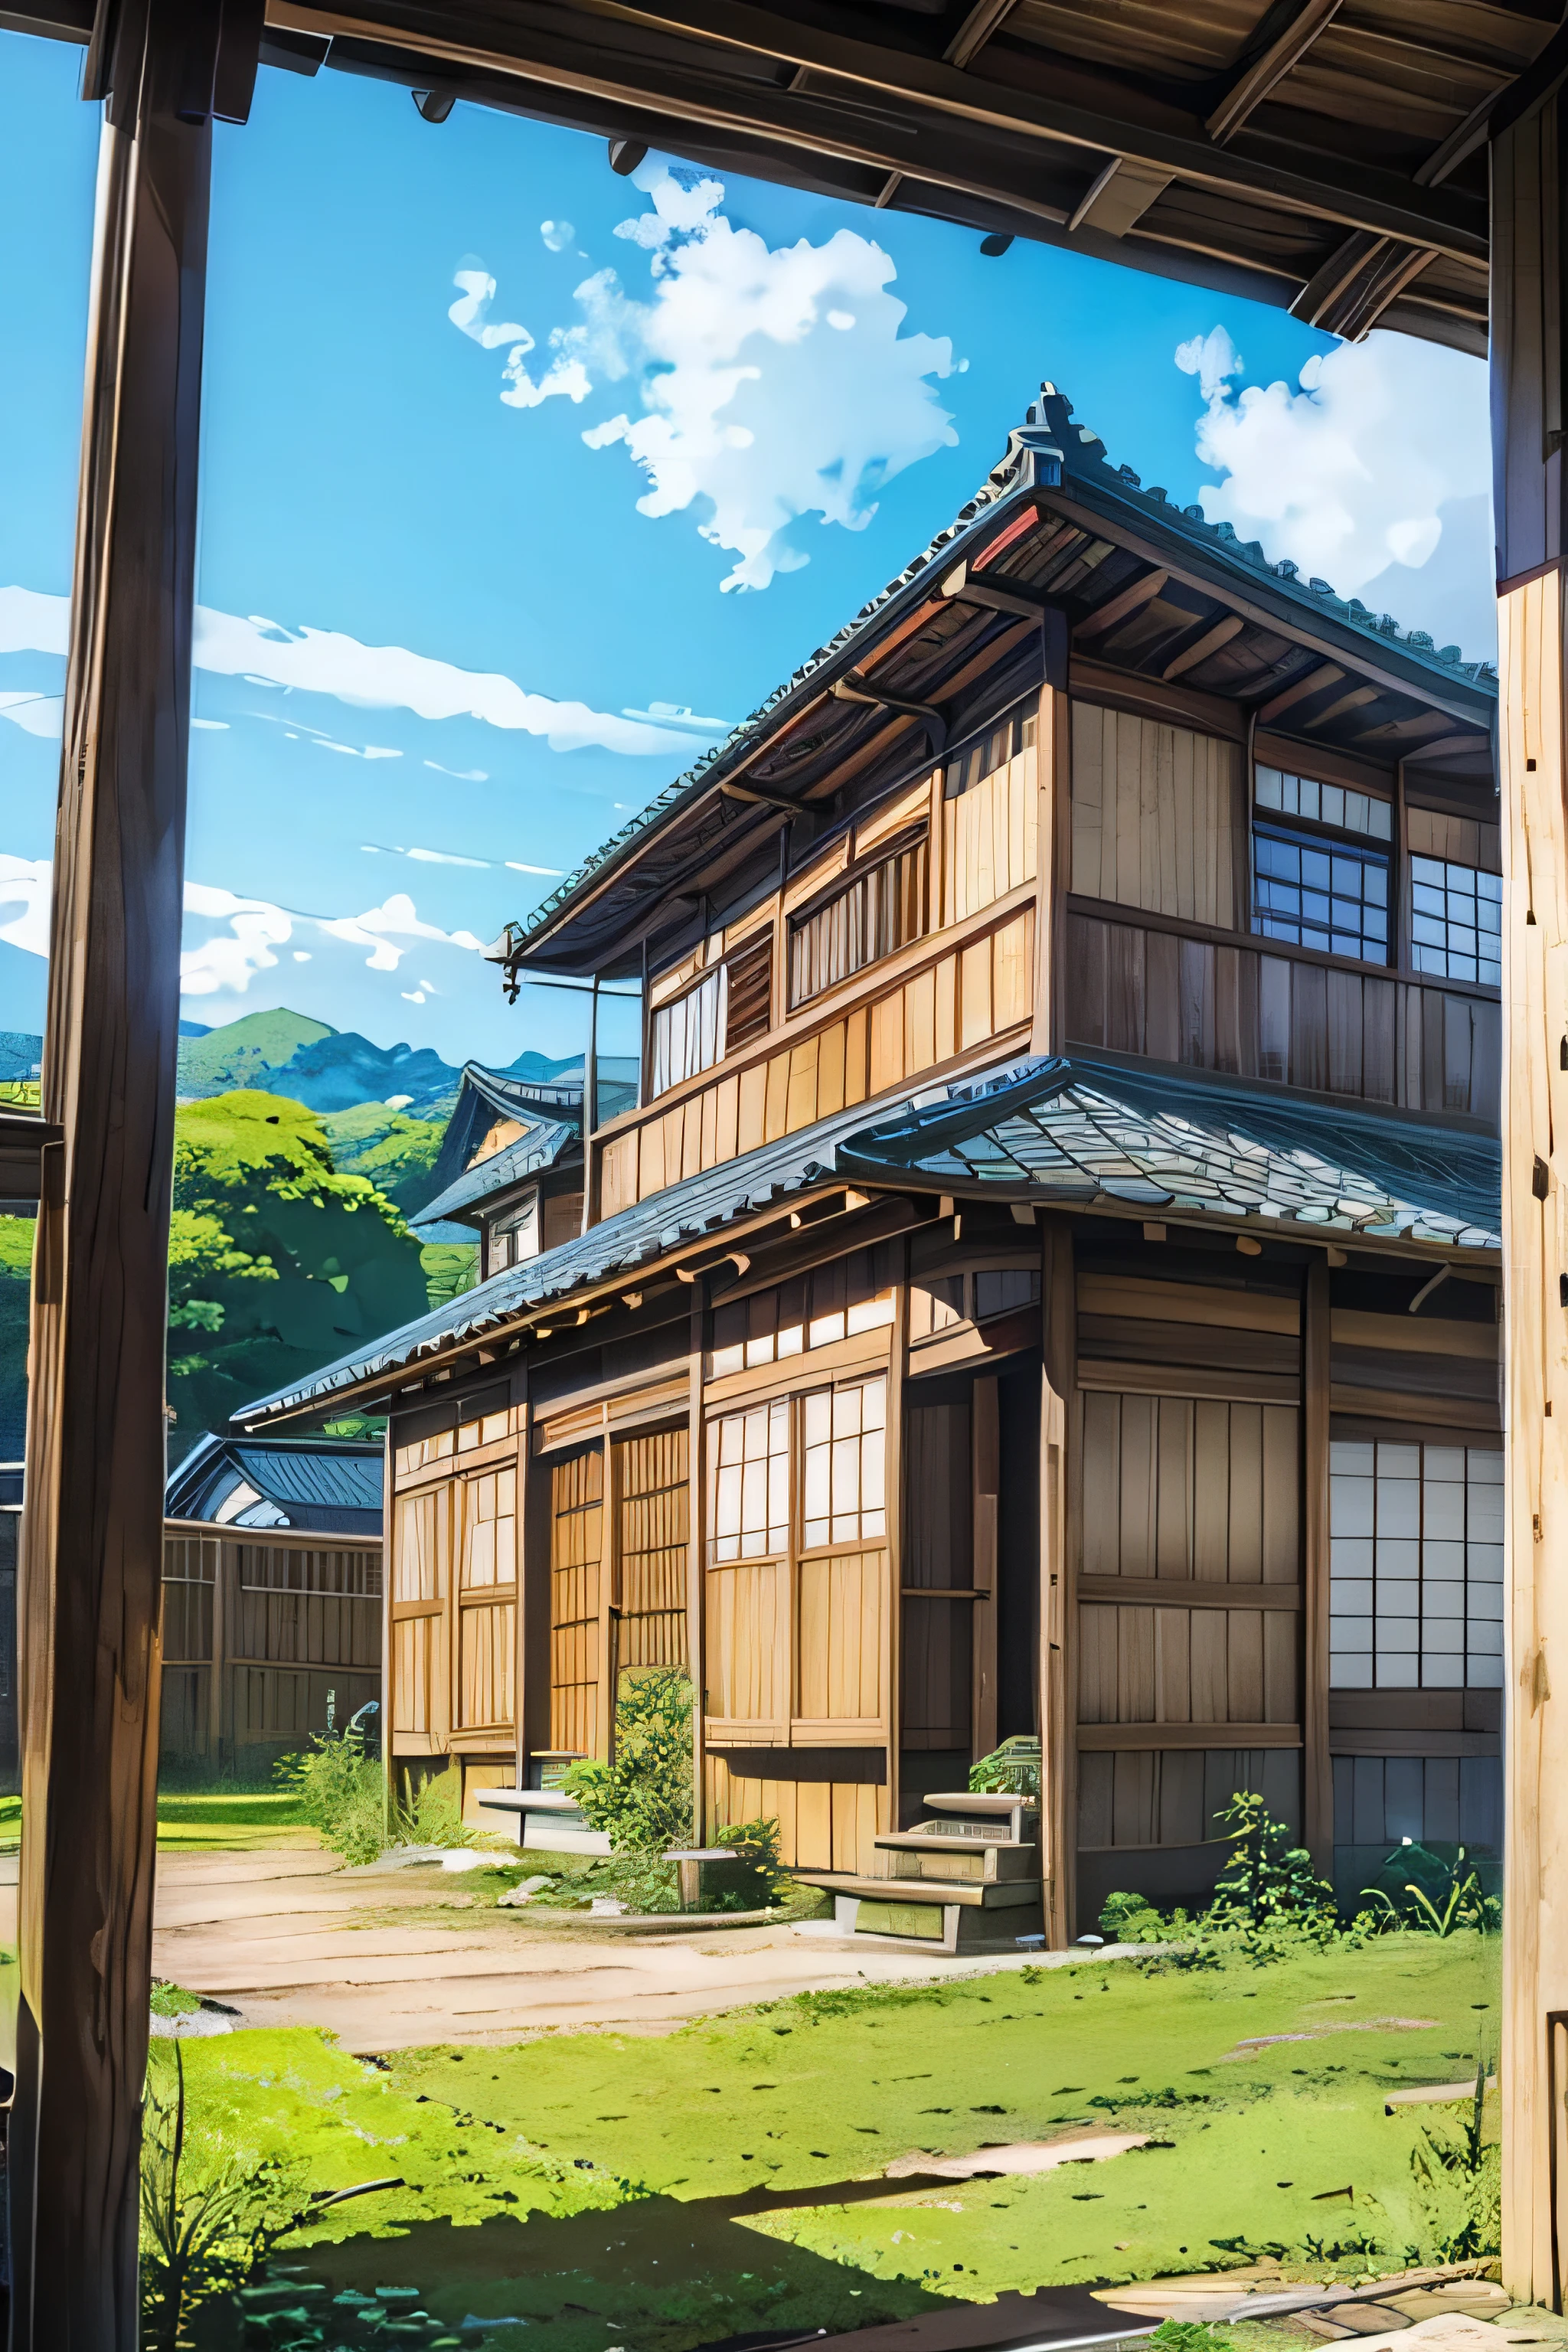 ângulos baixos、lente grande angular、Casa Velha do Japão、traditional wooden house in the paísside、país、Amplo céu azul、fundo de anime